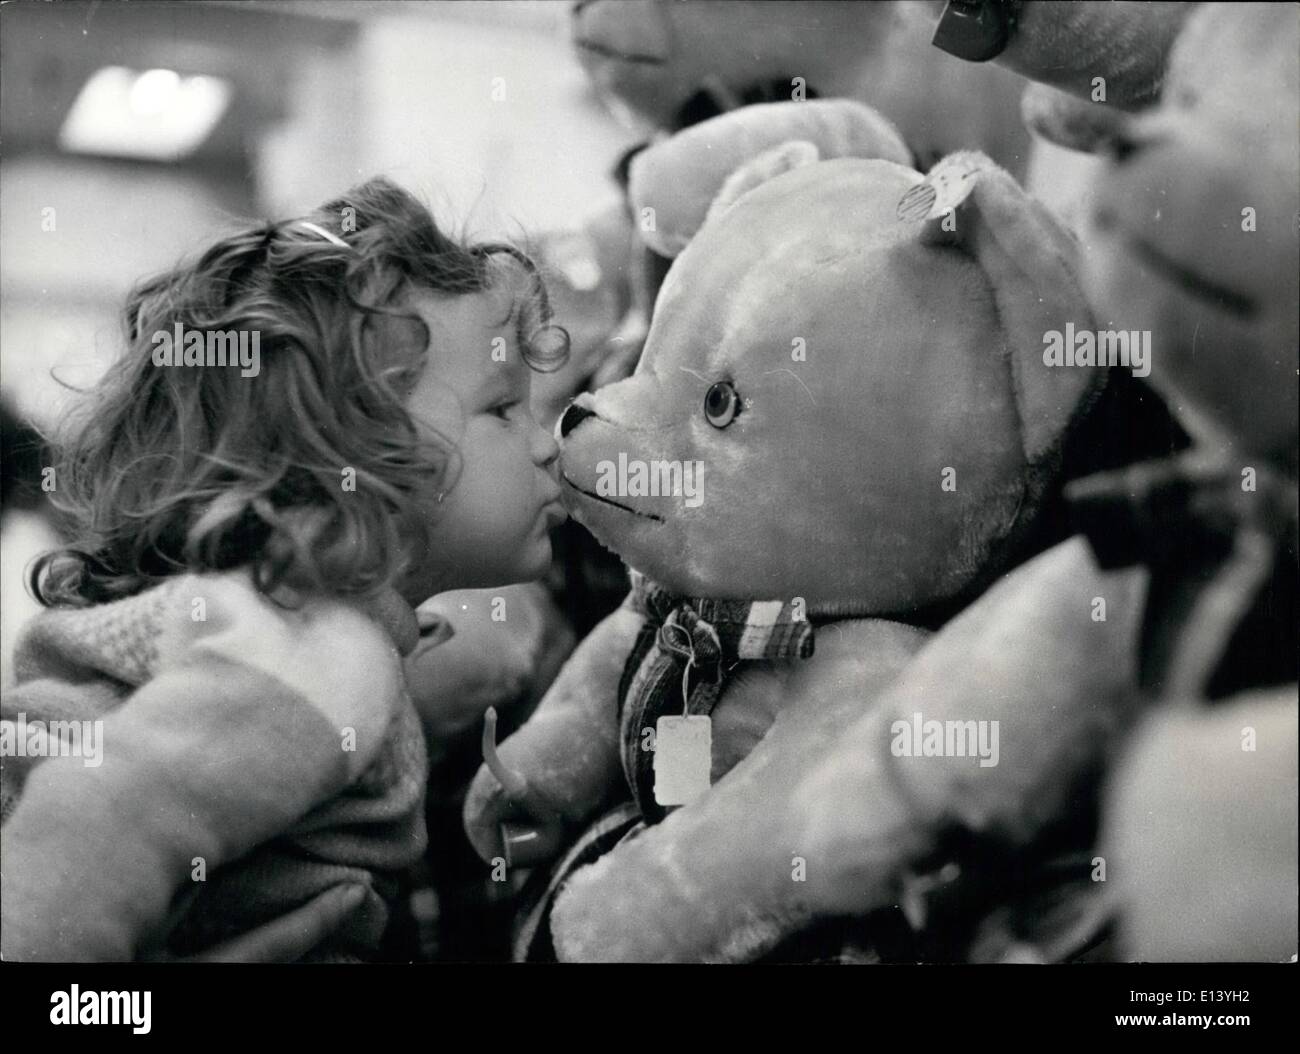 27 mar 2012 - giocattoli per Natale: ammirando i bambini sfollati giocattoli per Natale in negozi di Parigi. Foto Stock